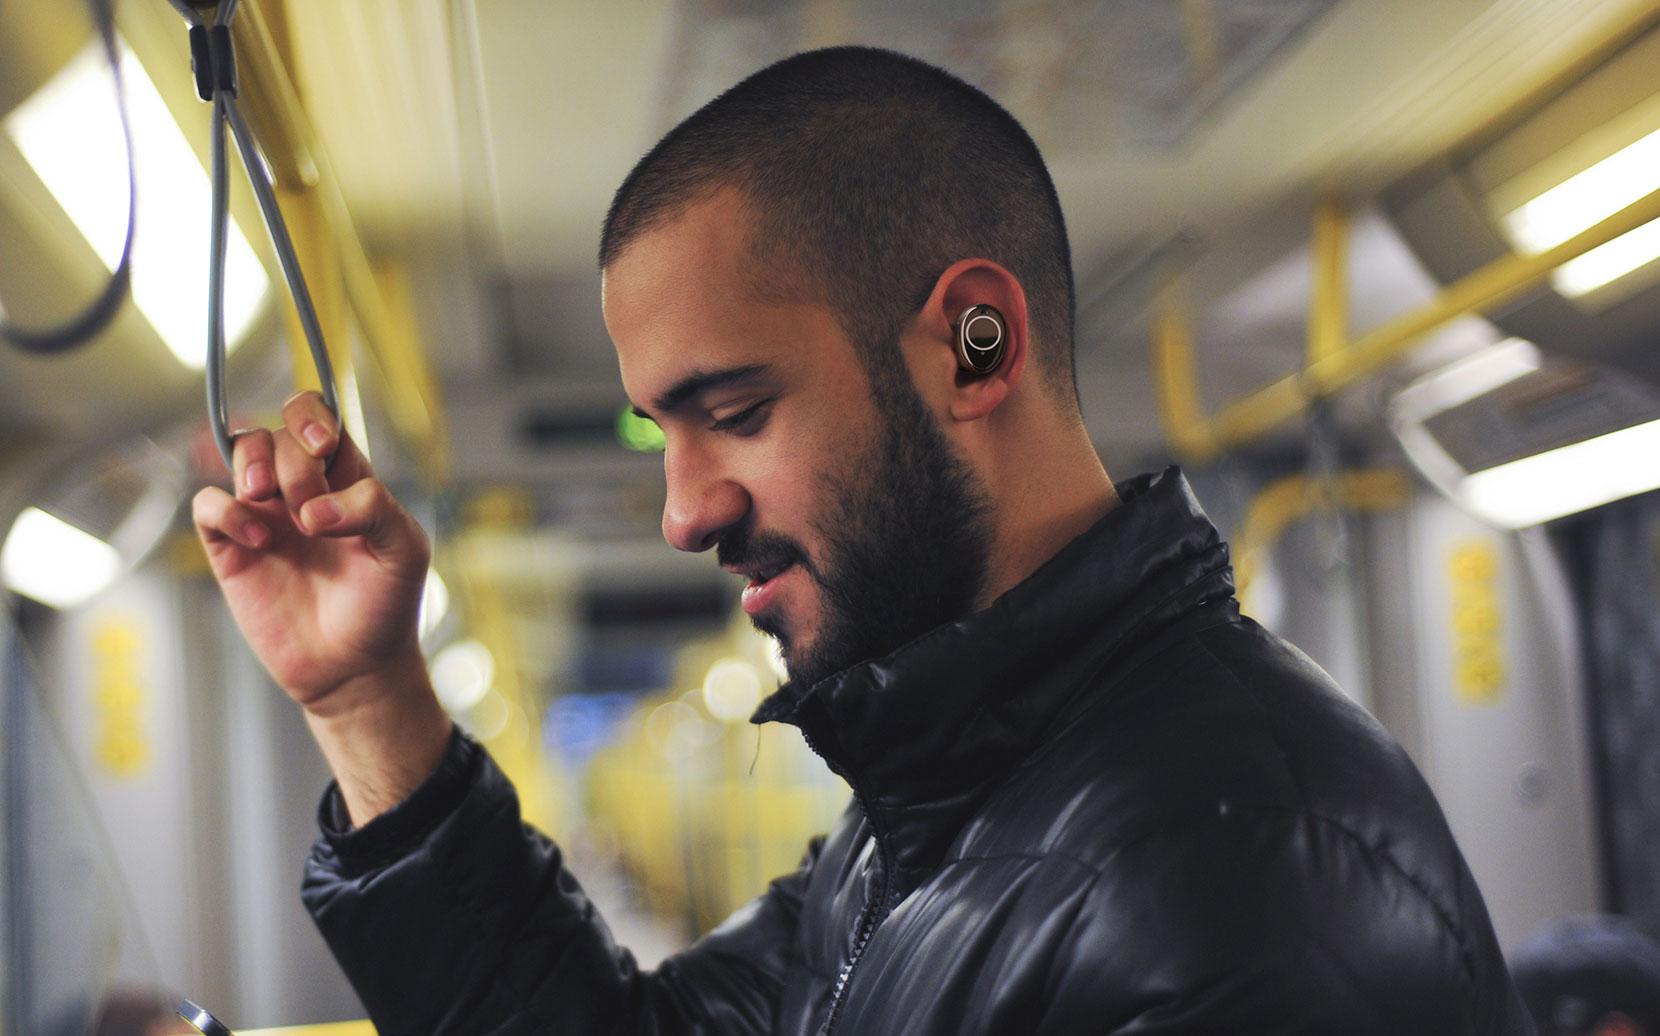 Słuchawki bezprzewodowe douszne IPX5 BT 5.2 Creative Outlier Pro - osobista przestrzeń, spersonalizowana cisza